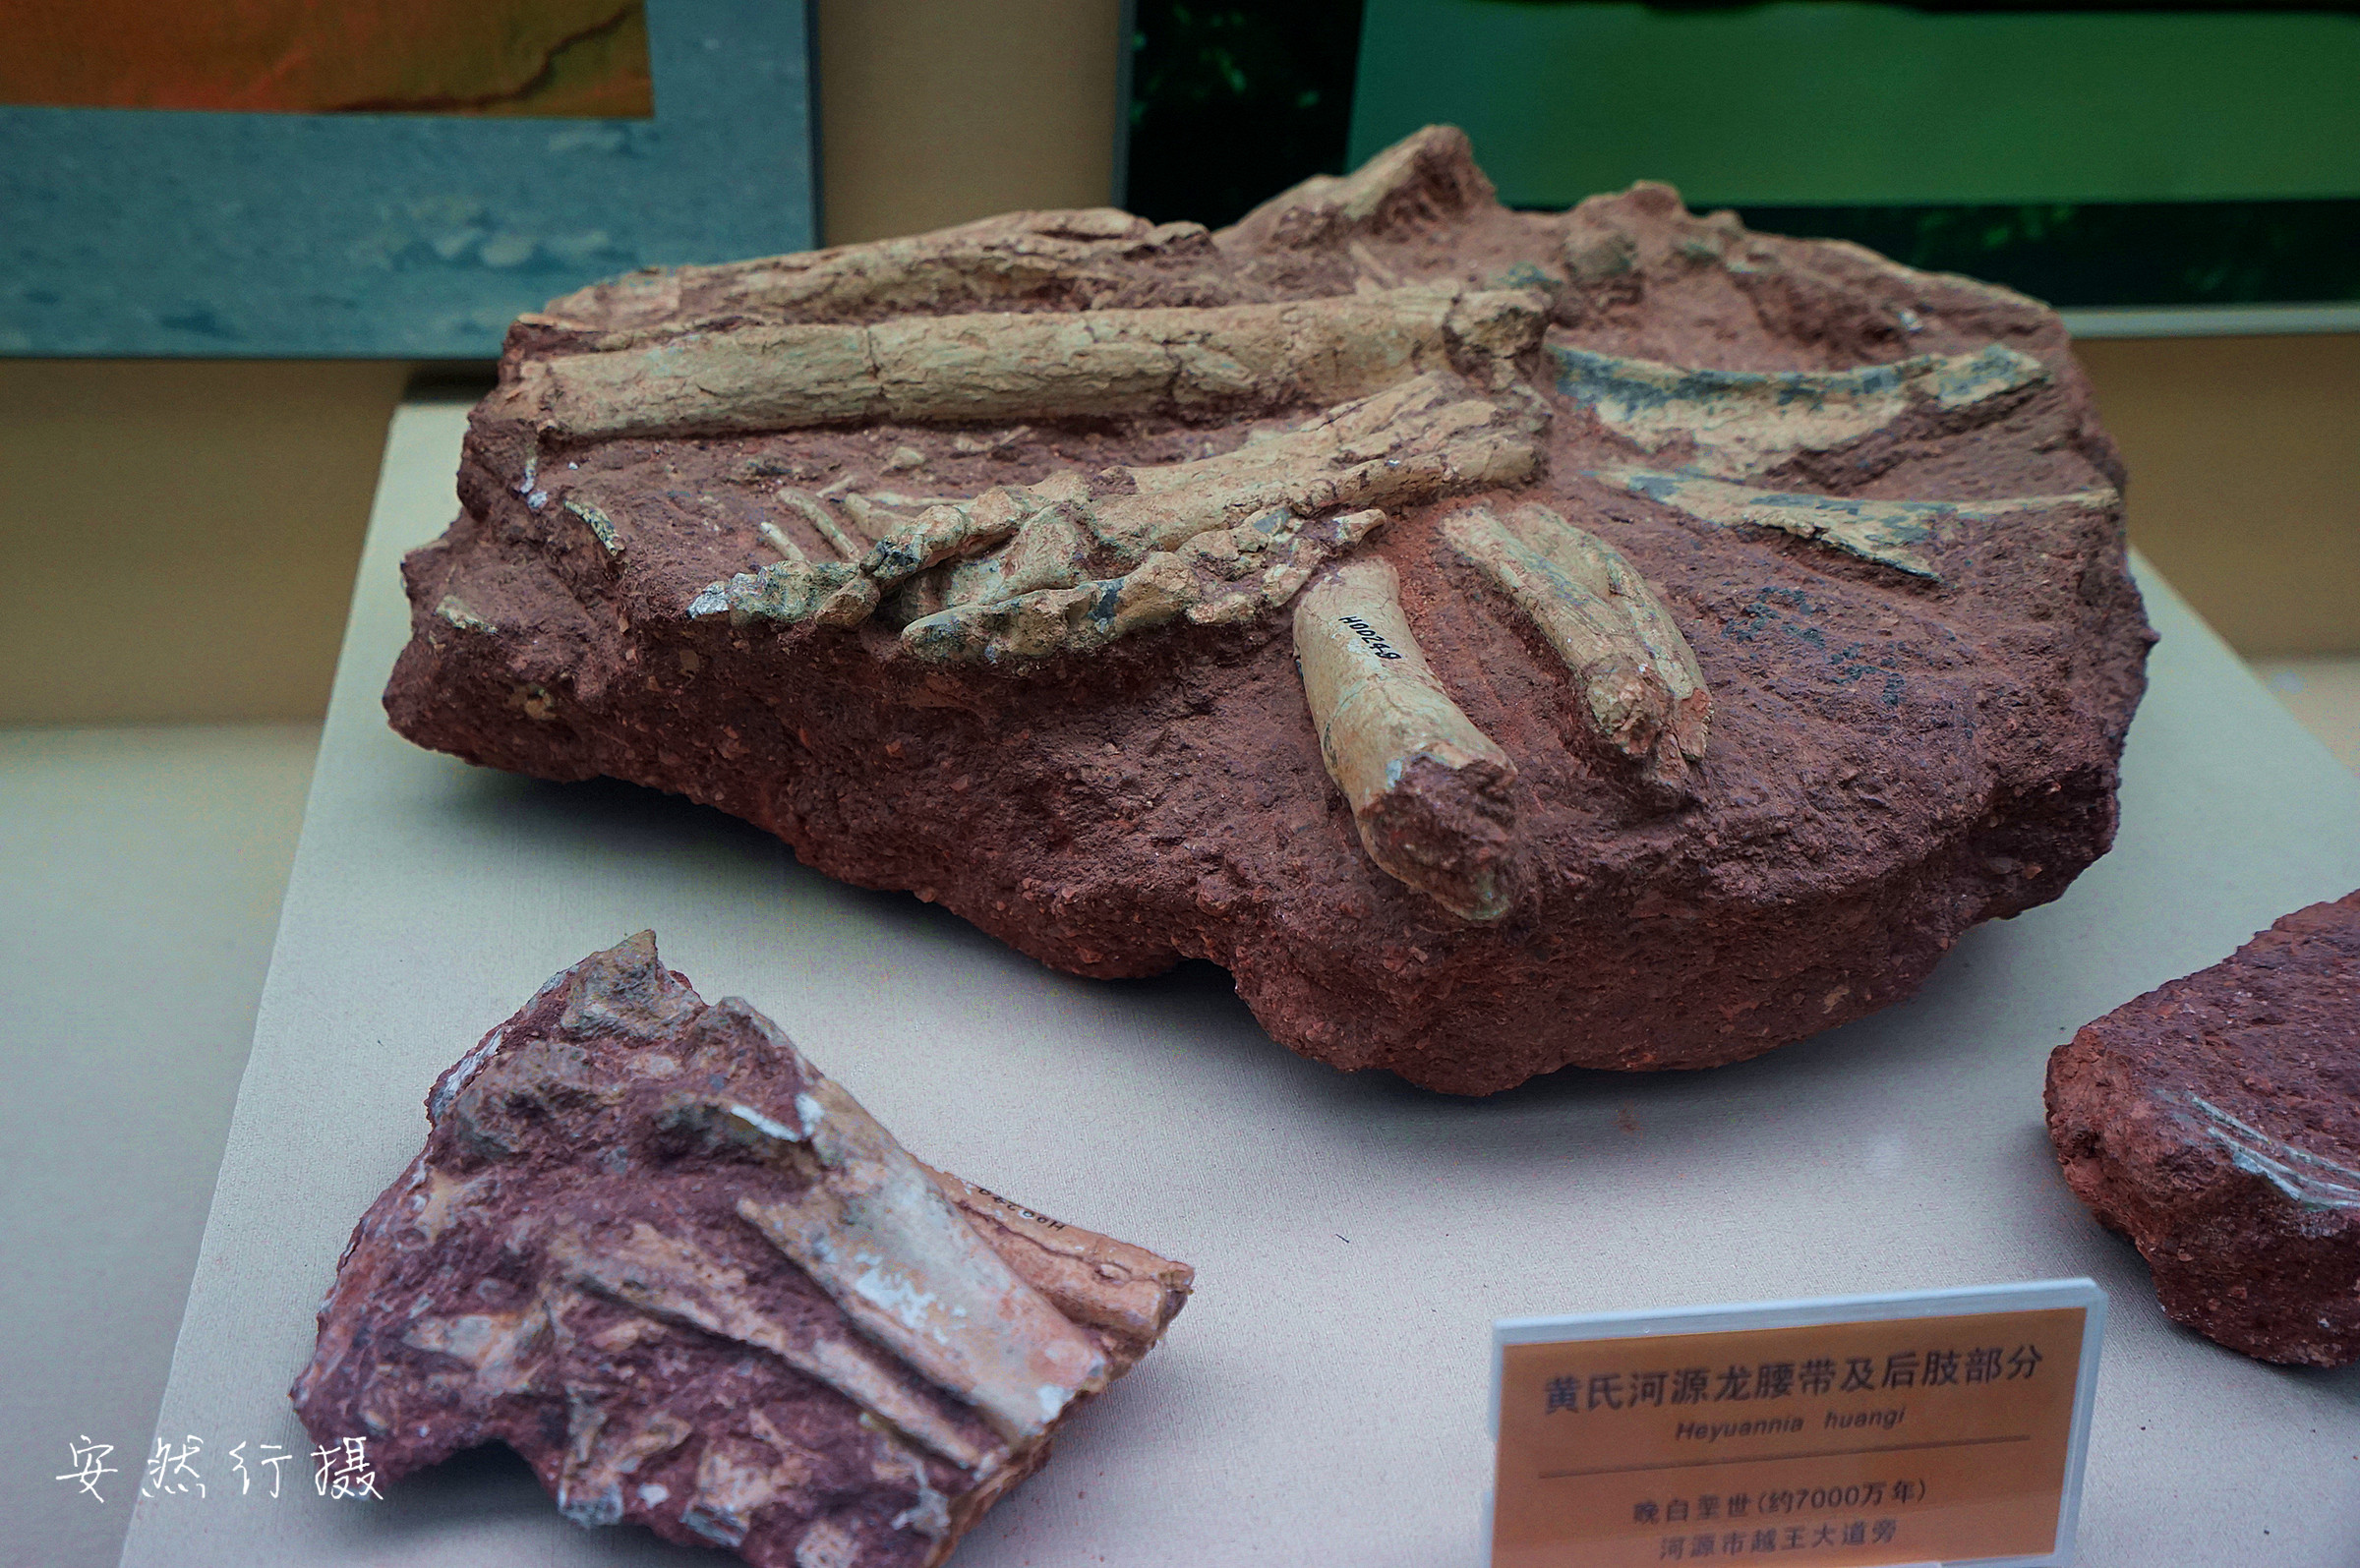 恐龙化石 - 堆糖，美图壁纸兴趣社区